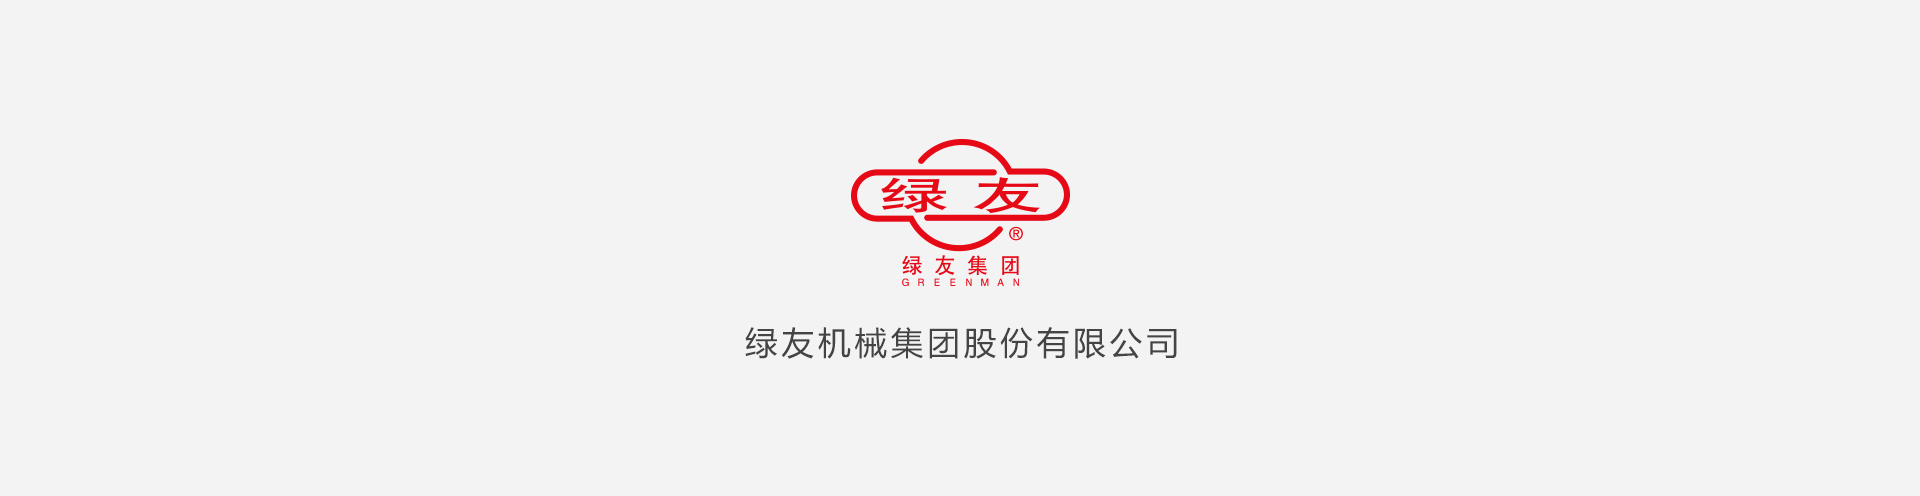 kb体育·(中国)官方网站 - ios/安卓版/手机APP下载